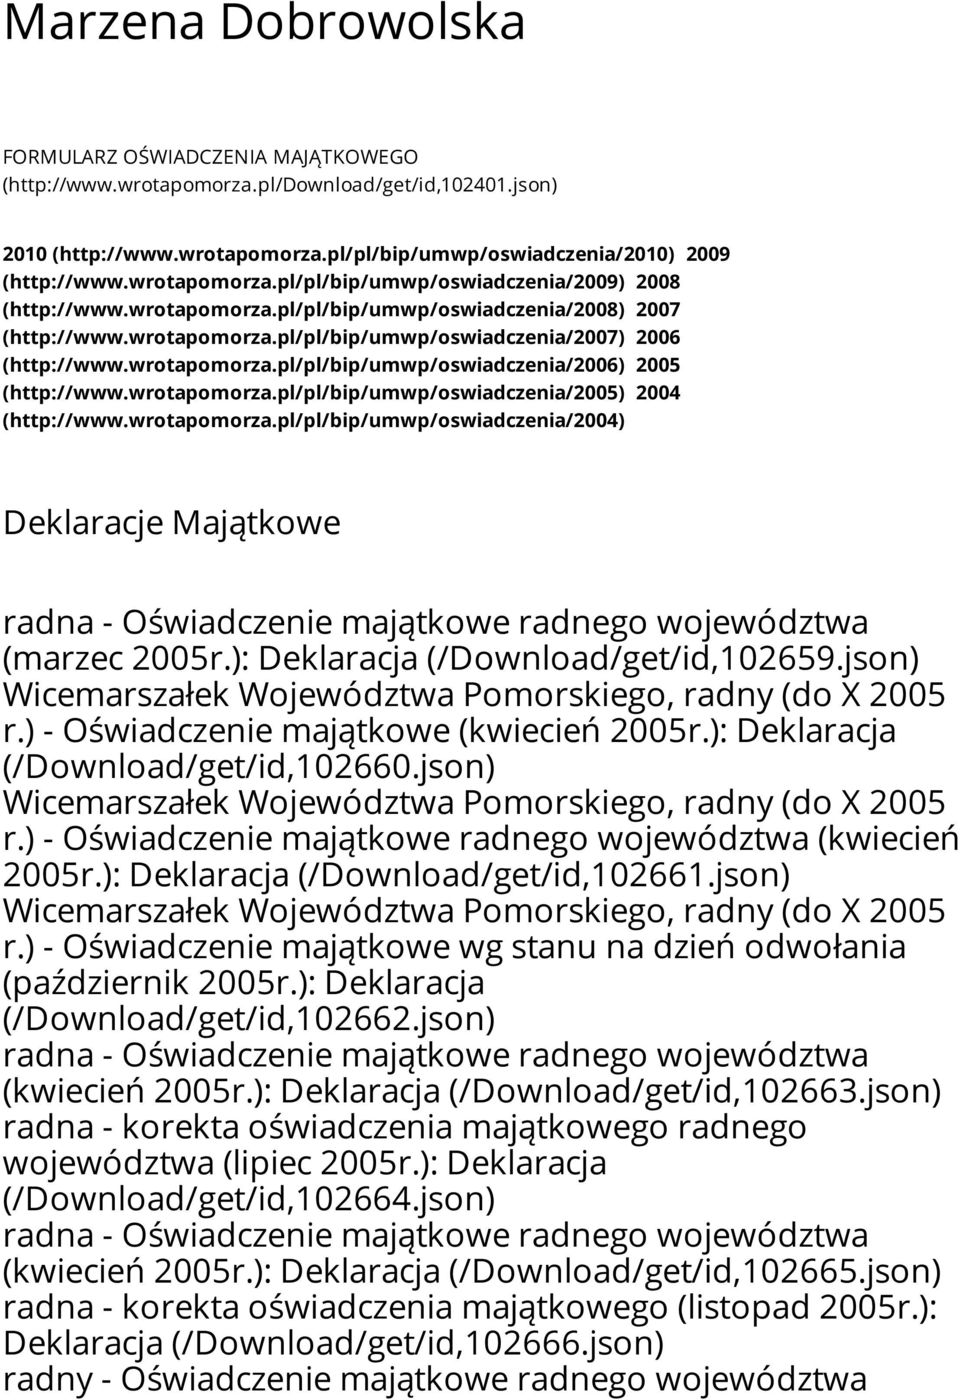 wrotapomorza.pl/pl/bip/umwp/oswiadczenia/2006) 2005 (http://www.wrotapomorza.pl/pl/bip/umwp/oswiadczenia/2005) 2004 (http://www.wrotapomorza.pl/pl/bip/umwp/oswiadczenia/2004) Deklaracje Majątkowe radna - Oświadczenie majątkowe radnego województwa (marzec 2005r.